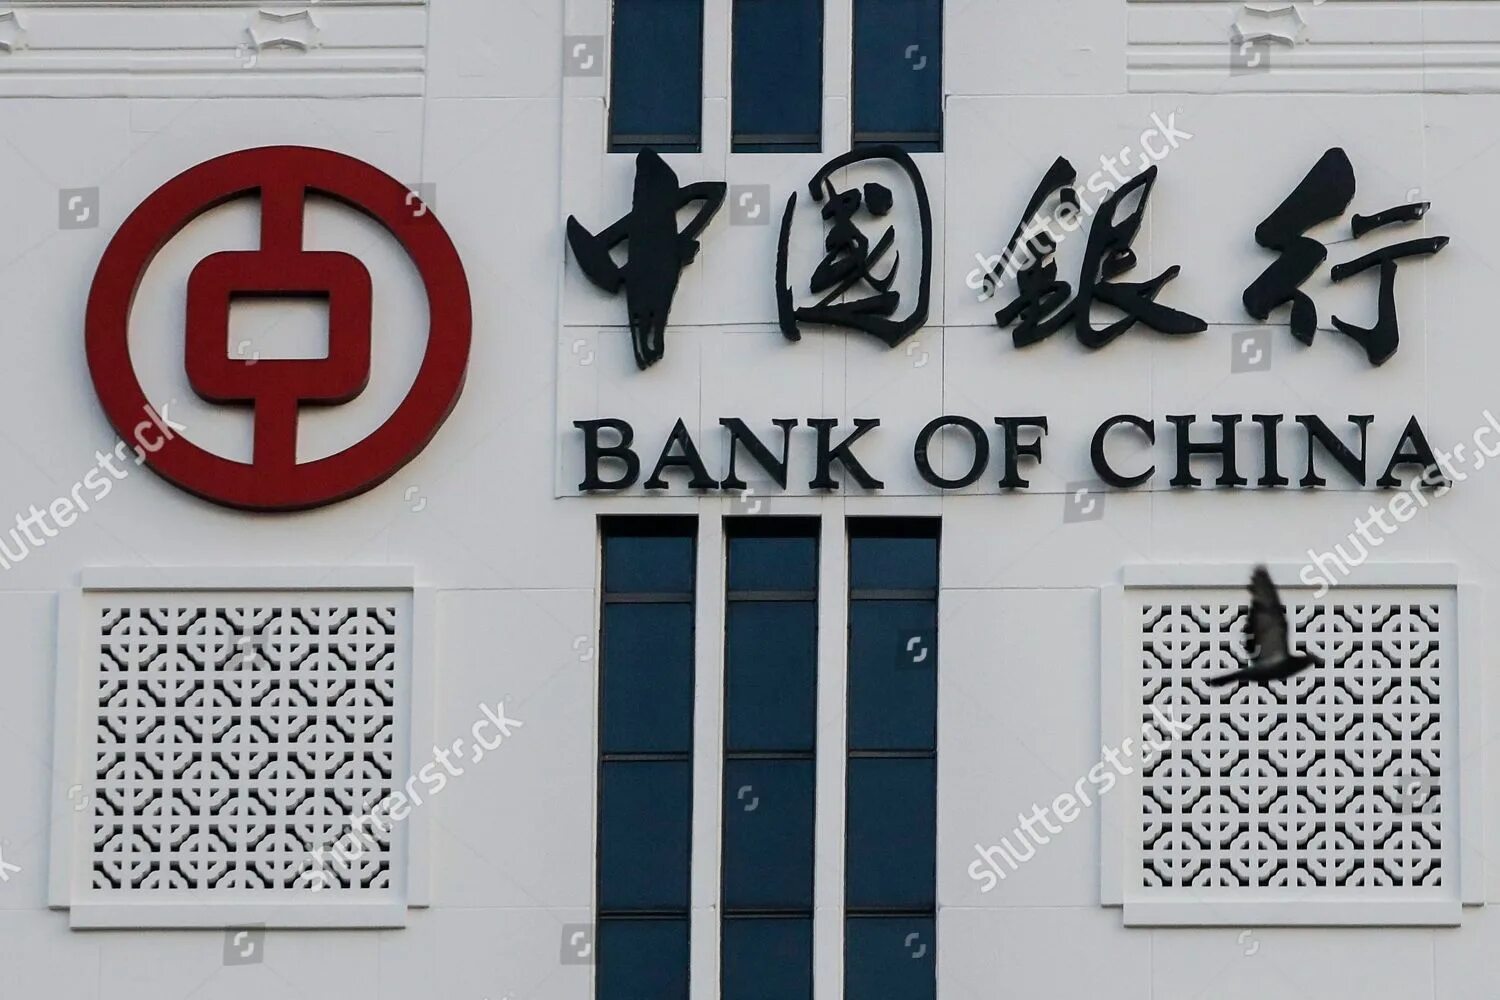 Банк Китая. Народный банк Китая. Bank of China логотип. Bank of China банки Китая. Bank of china russia